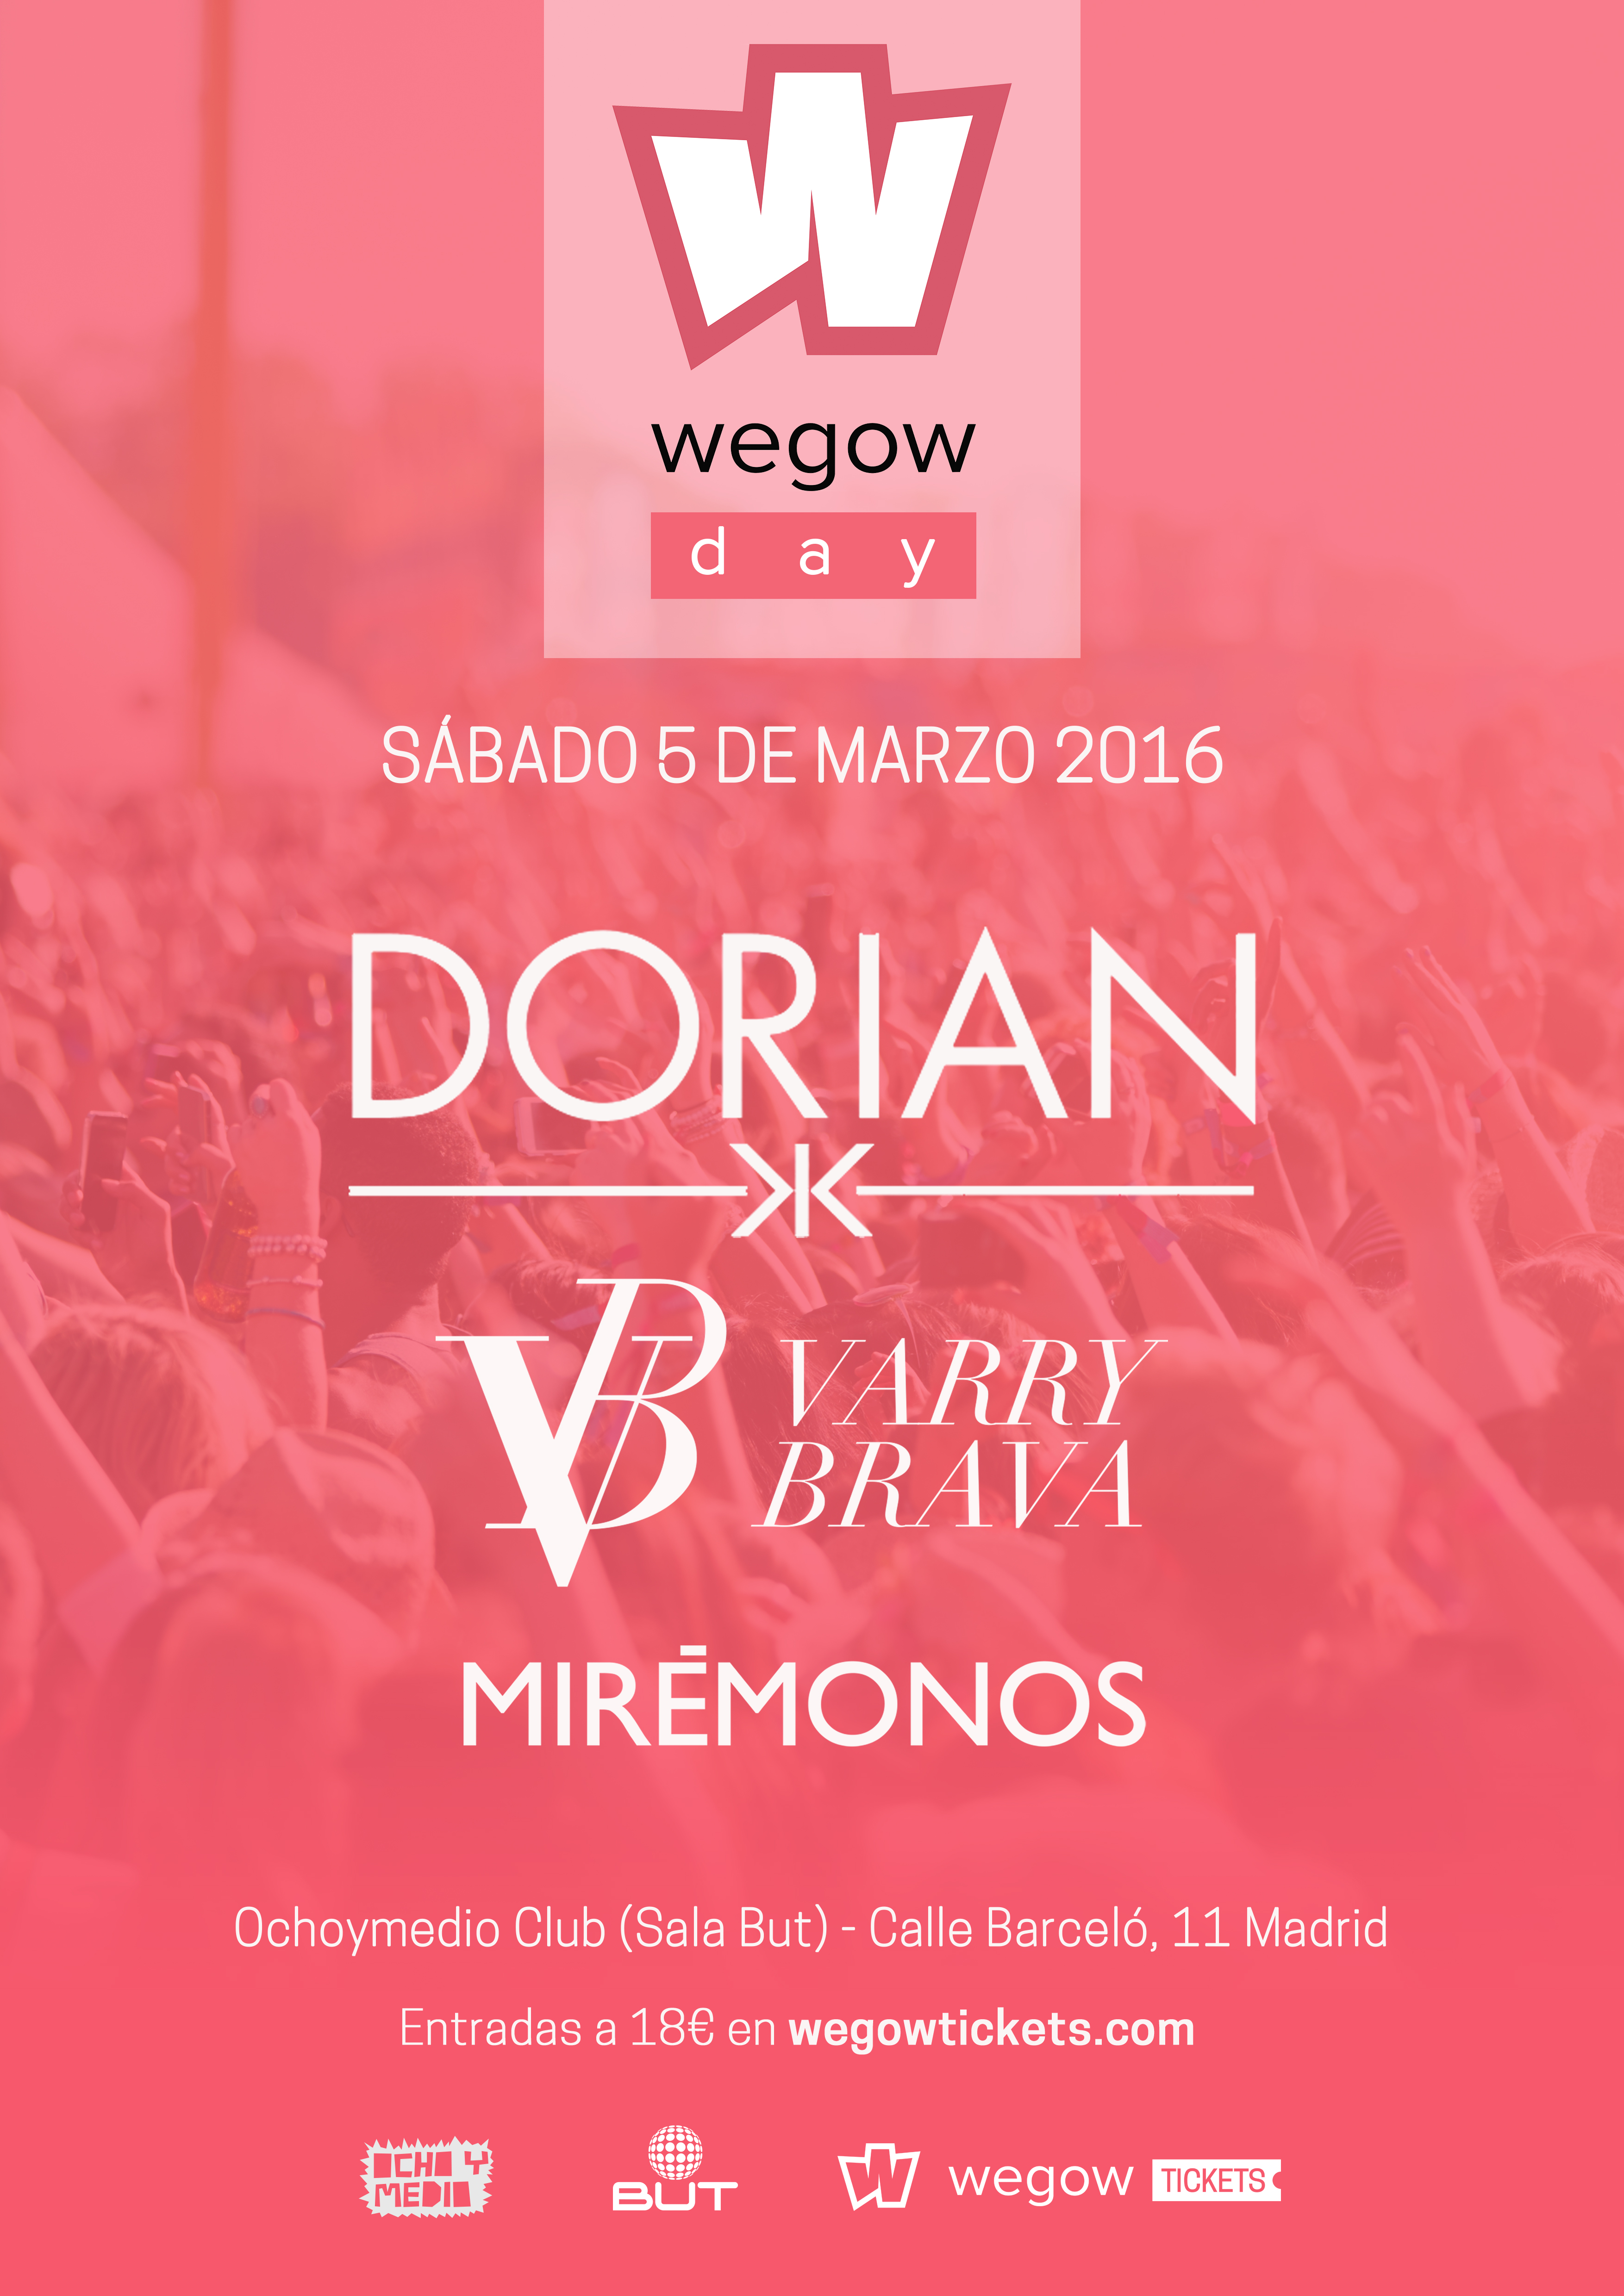 Dorian, Varry Brava y Mirémonos cierran el cartel del Wegow Day: Sábado 5 de marzo en la Sala Ochoymedio Club